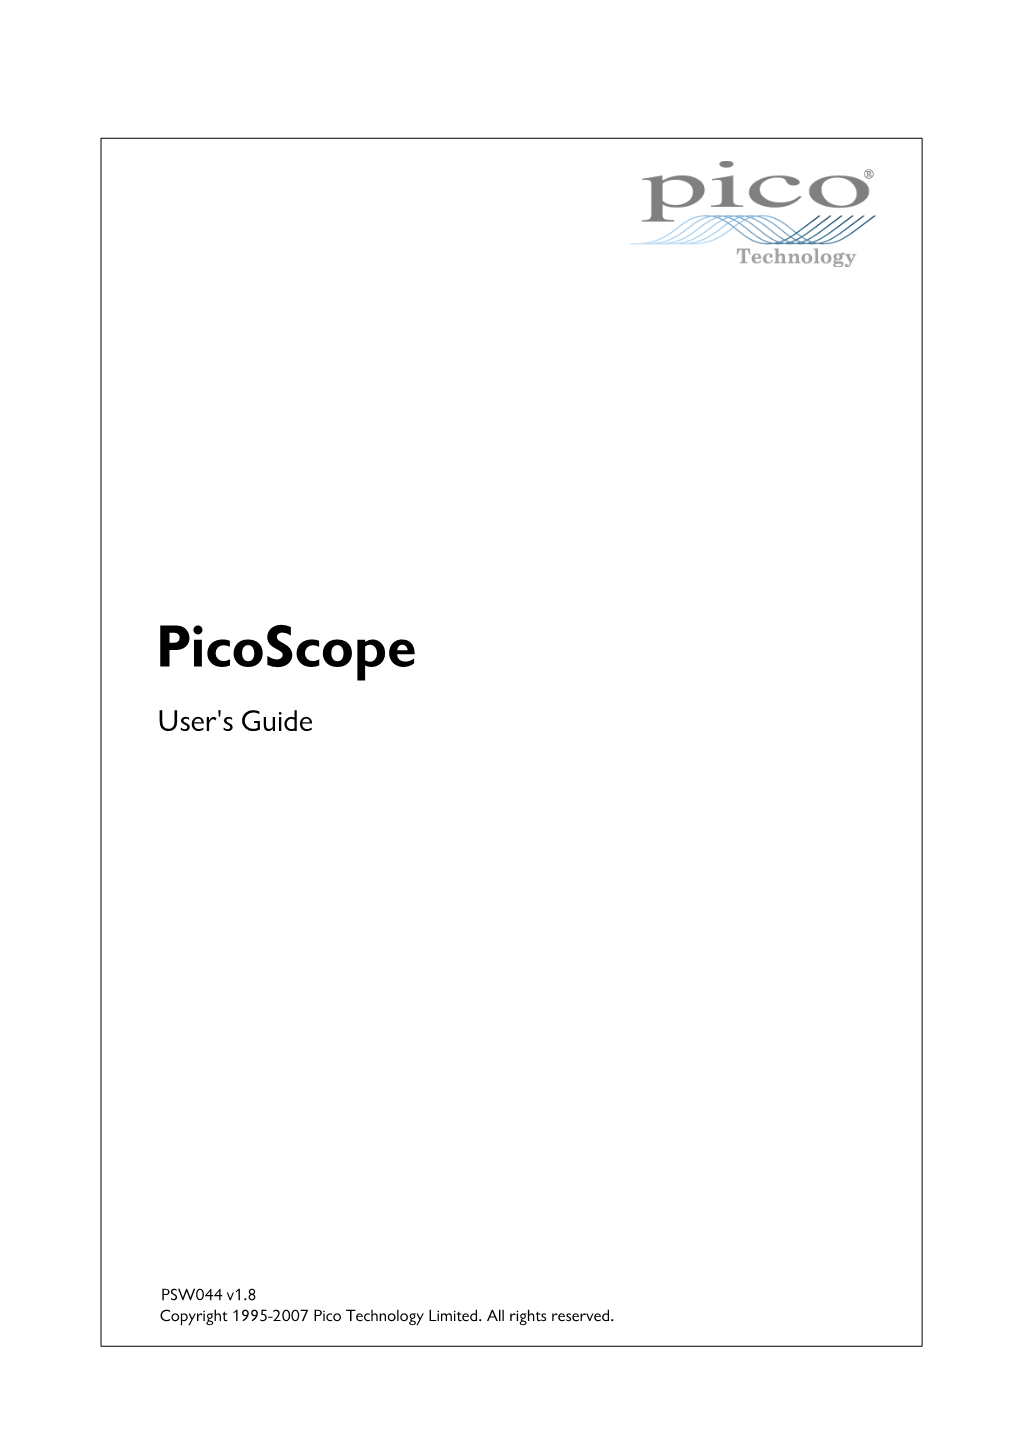 Picoscope User Guide Contents